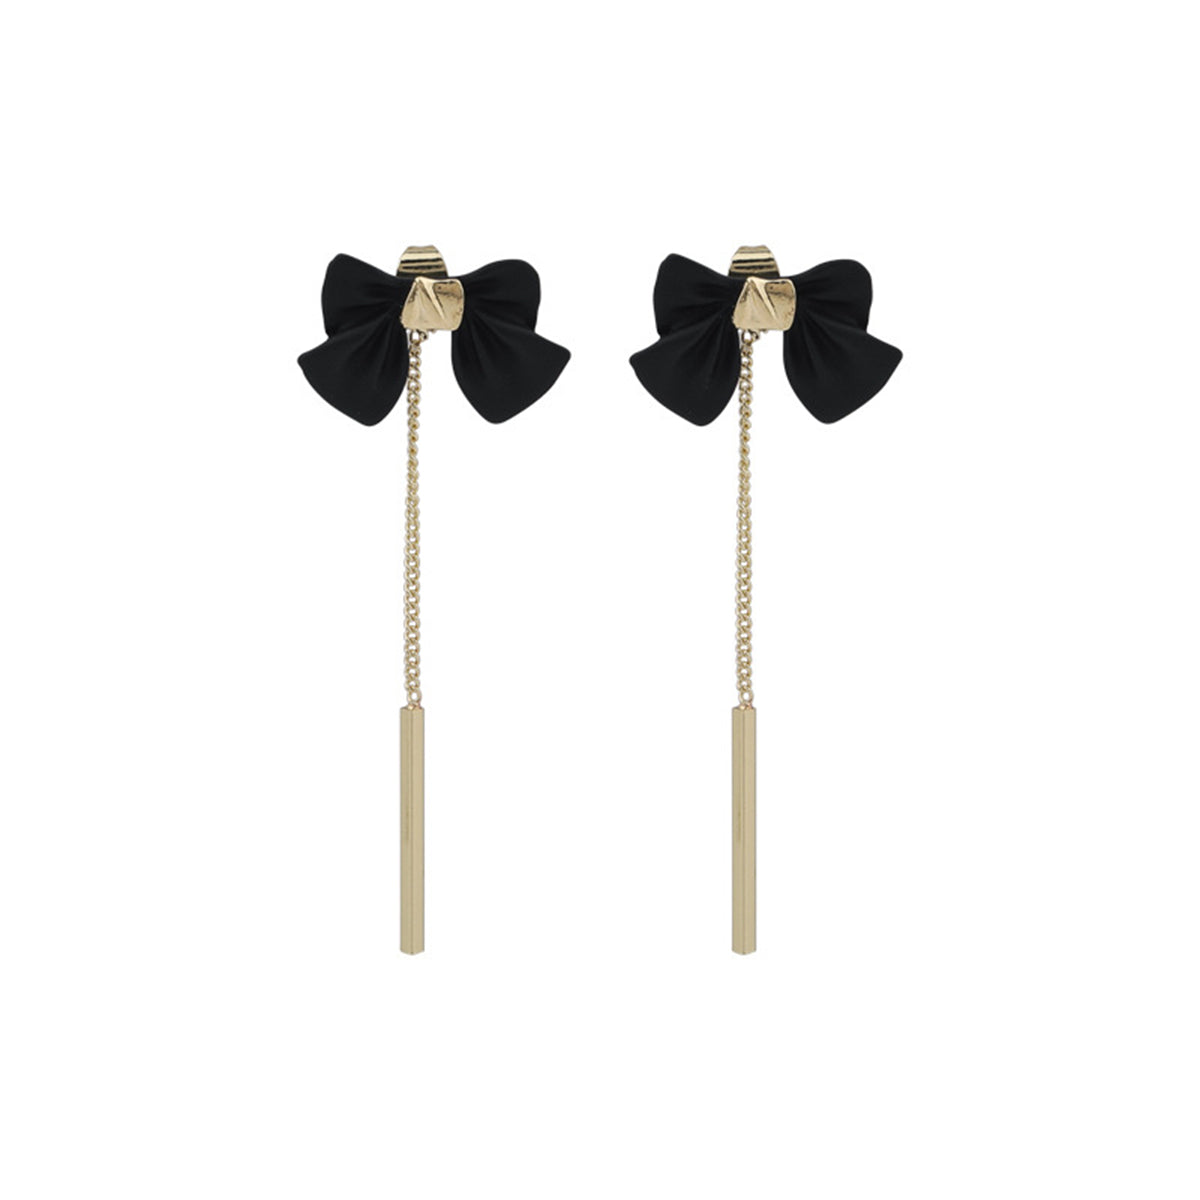 Black Enamel & 18K Gold-Plated Bow Ear Jackets